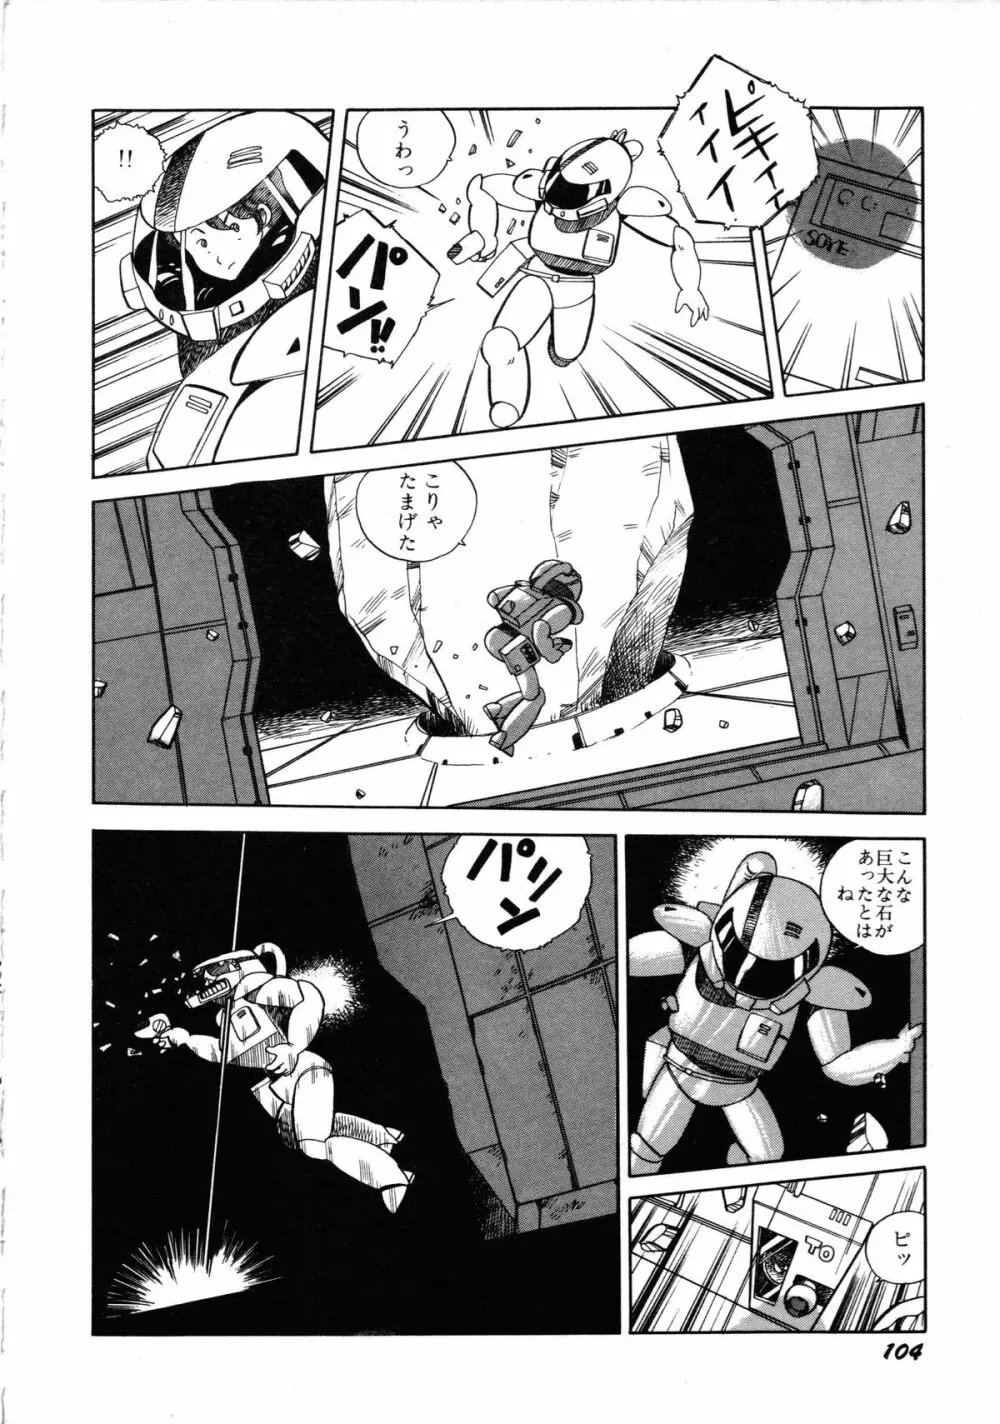 ロボット&美少女傑作選 レモン・ピープル1982-1986 108ページ